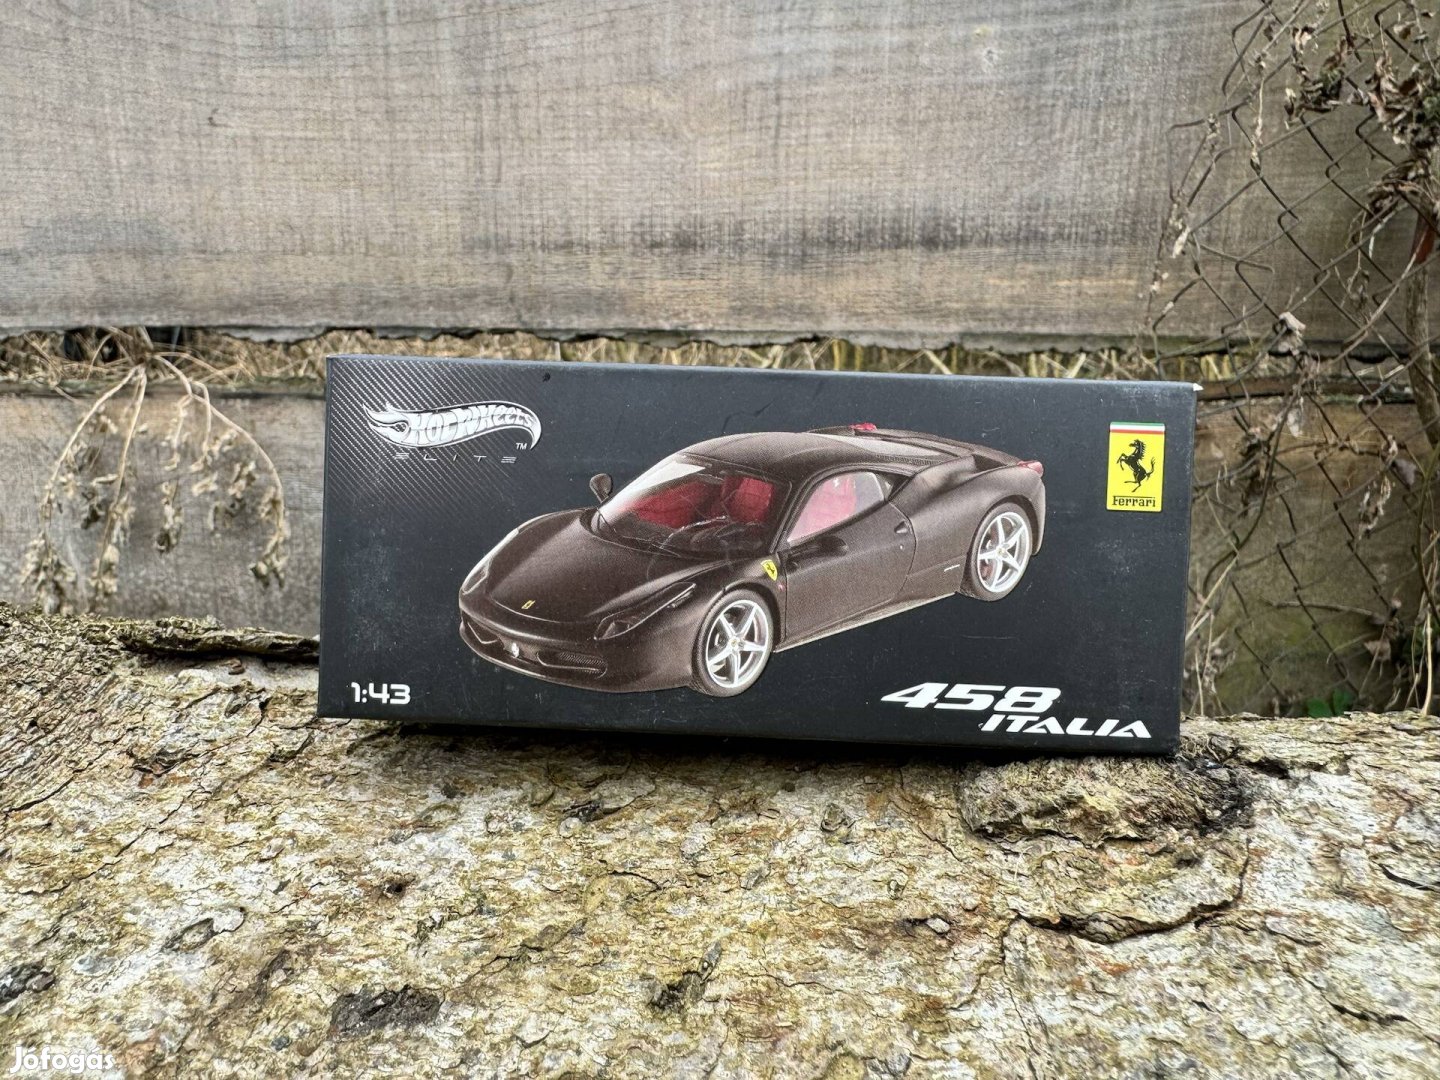 Mattel Hot Wheels Elite Ferrari 458 Italia 1:43